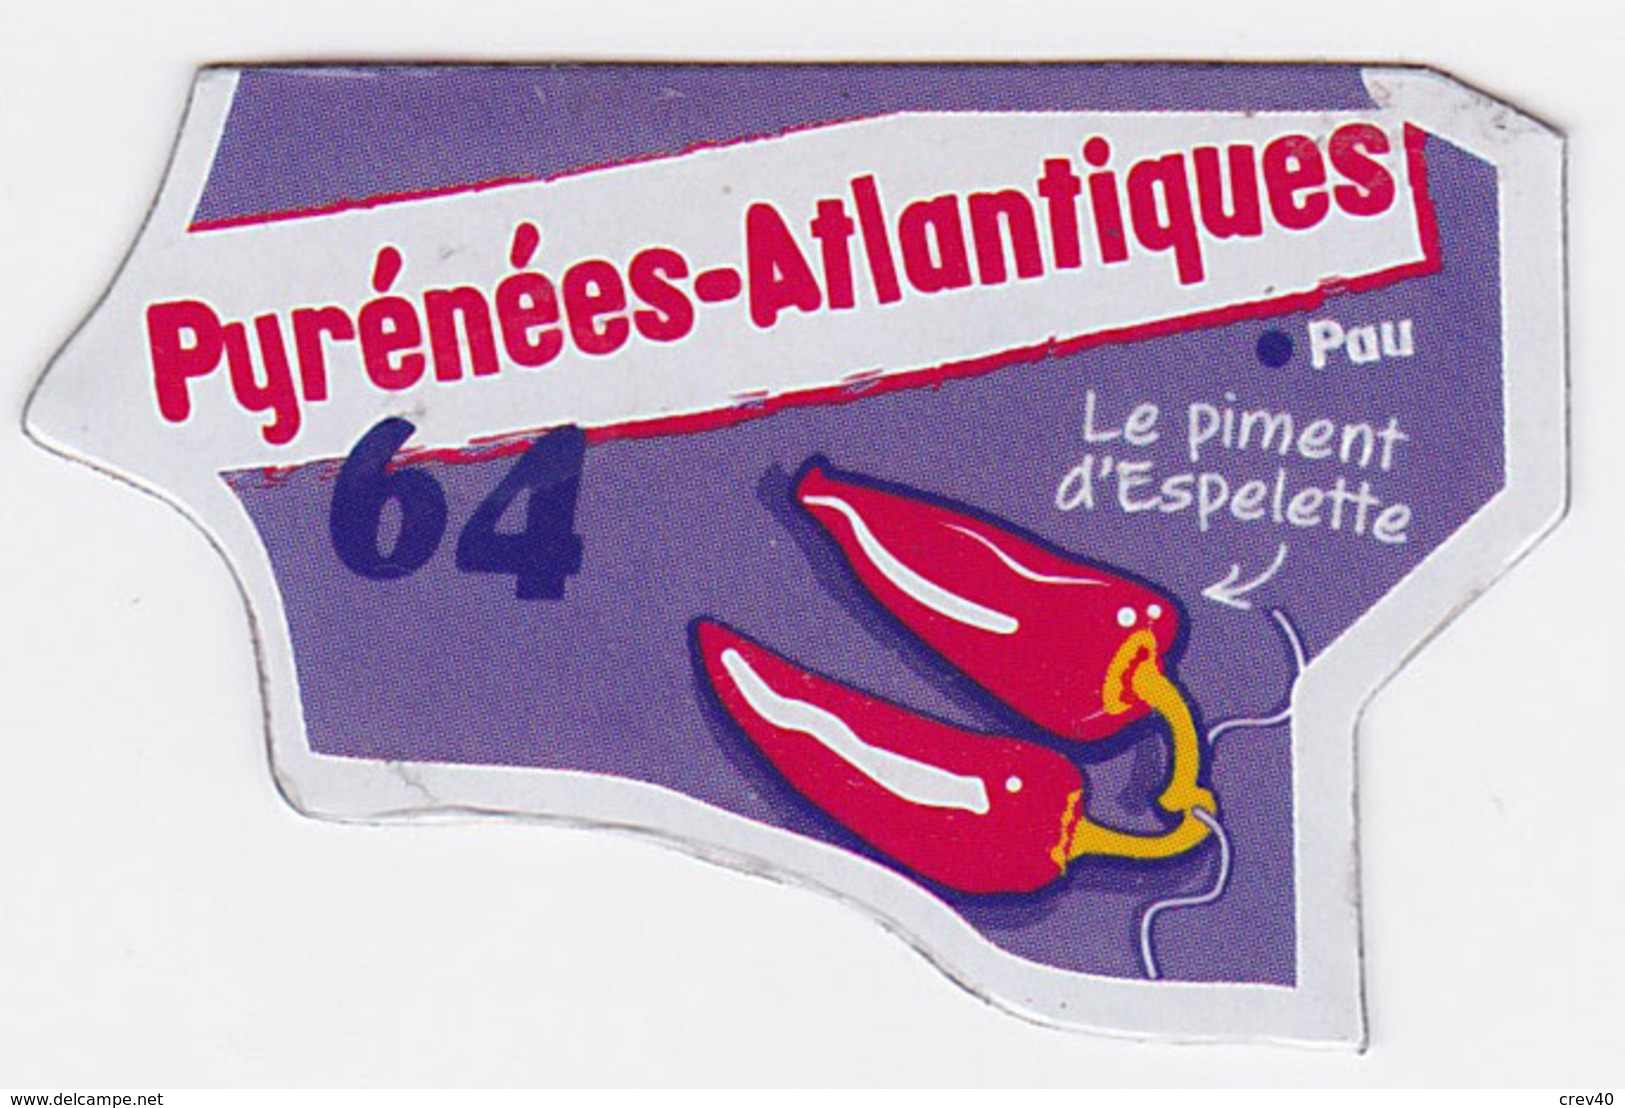 Magnet Le Gaulois - Pyrénées-Atlantiques 64 - Magnets